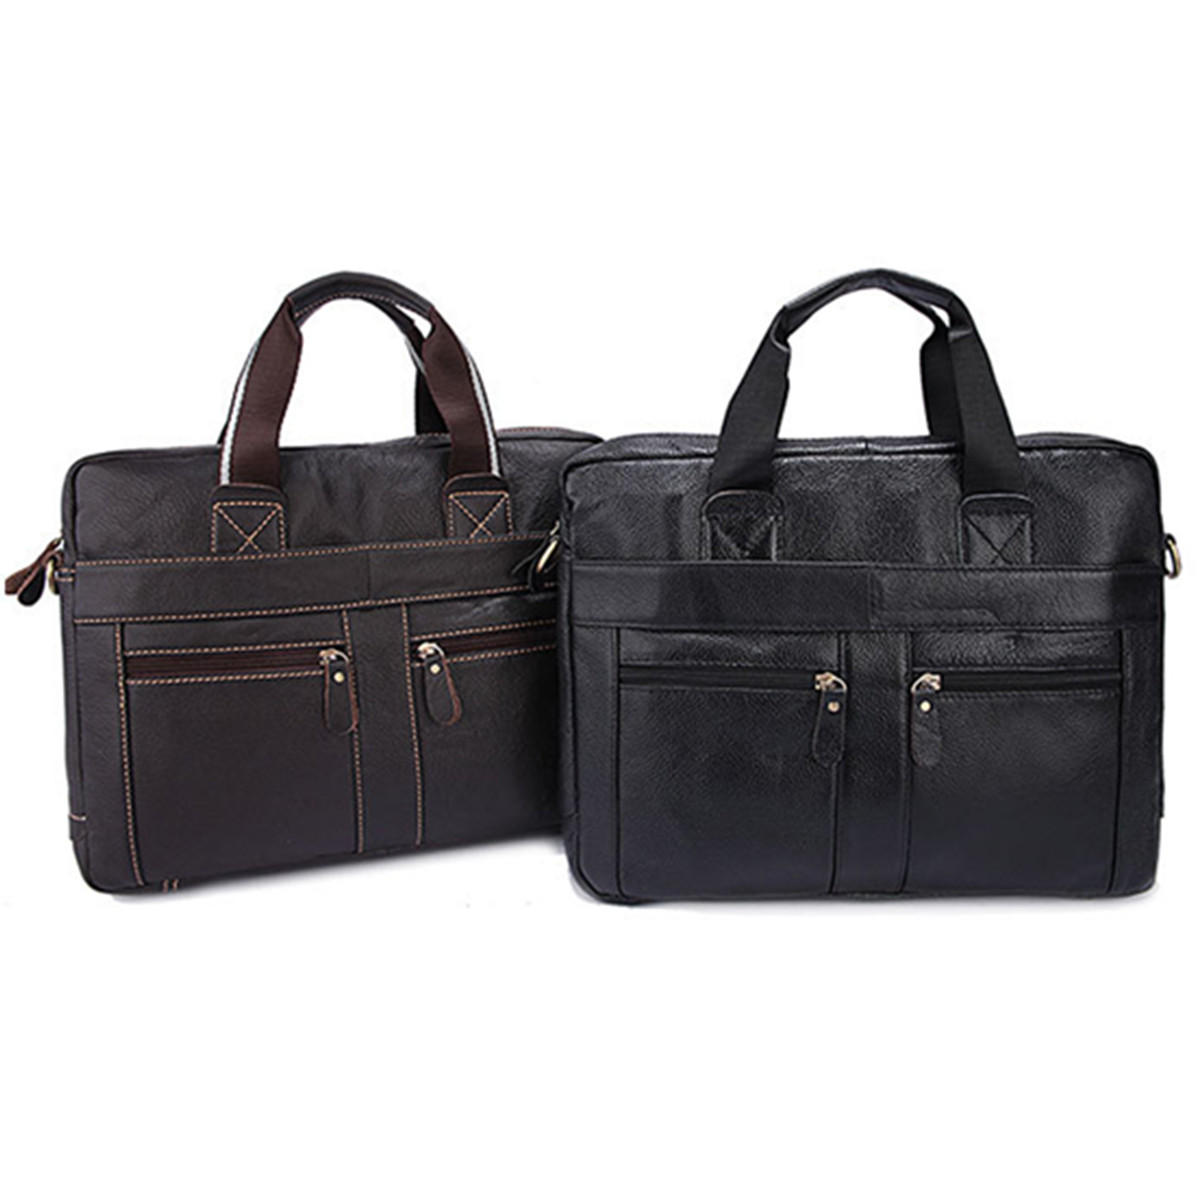 Männer echtes Leder Business Aktentasche Handtasche Laptop Schulter Messenger Bag Outdoor Reisen